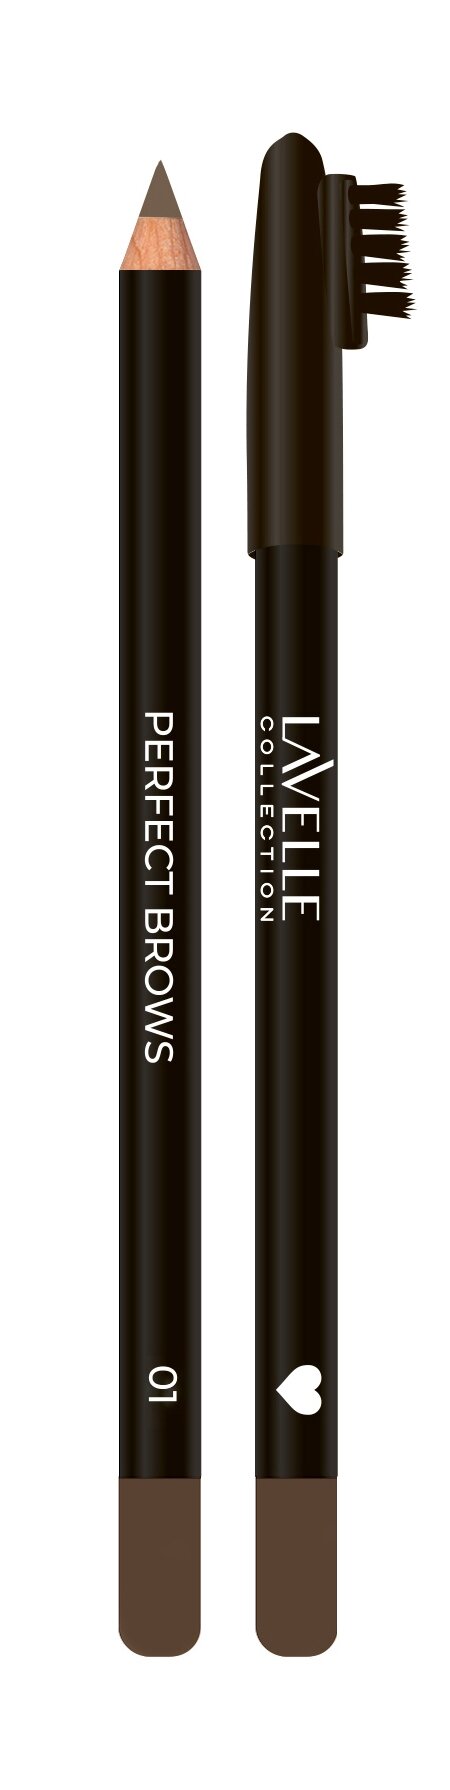 LAVELLE COLLECTION Карандаш для бровей классический Classic Brow Pencil BP02, 0,75 г, 01 светло-коричневый